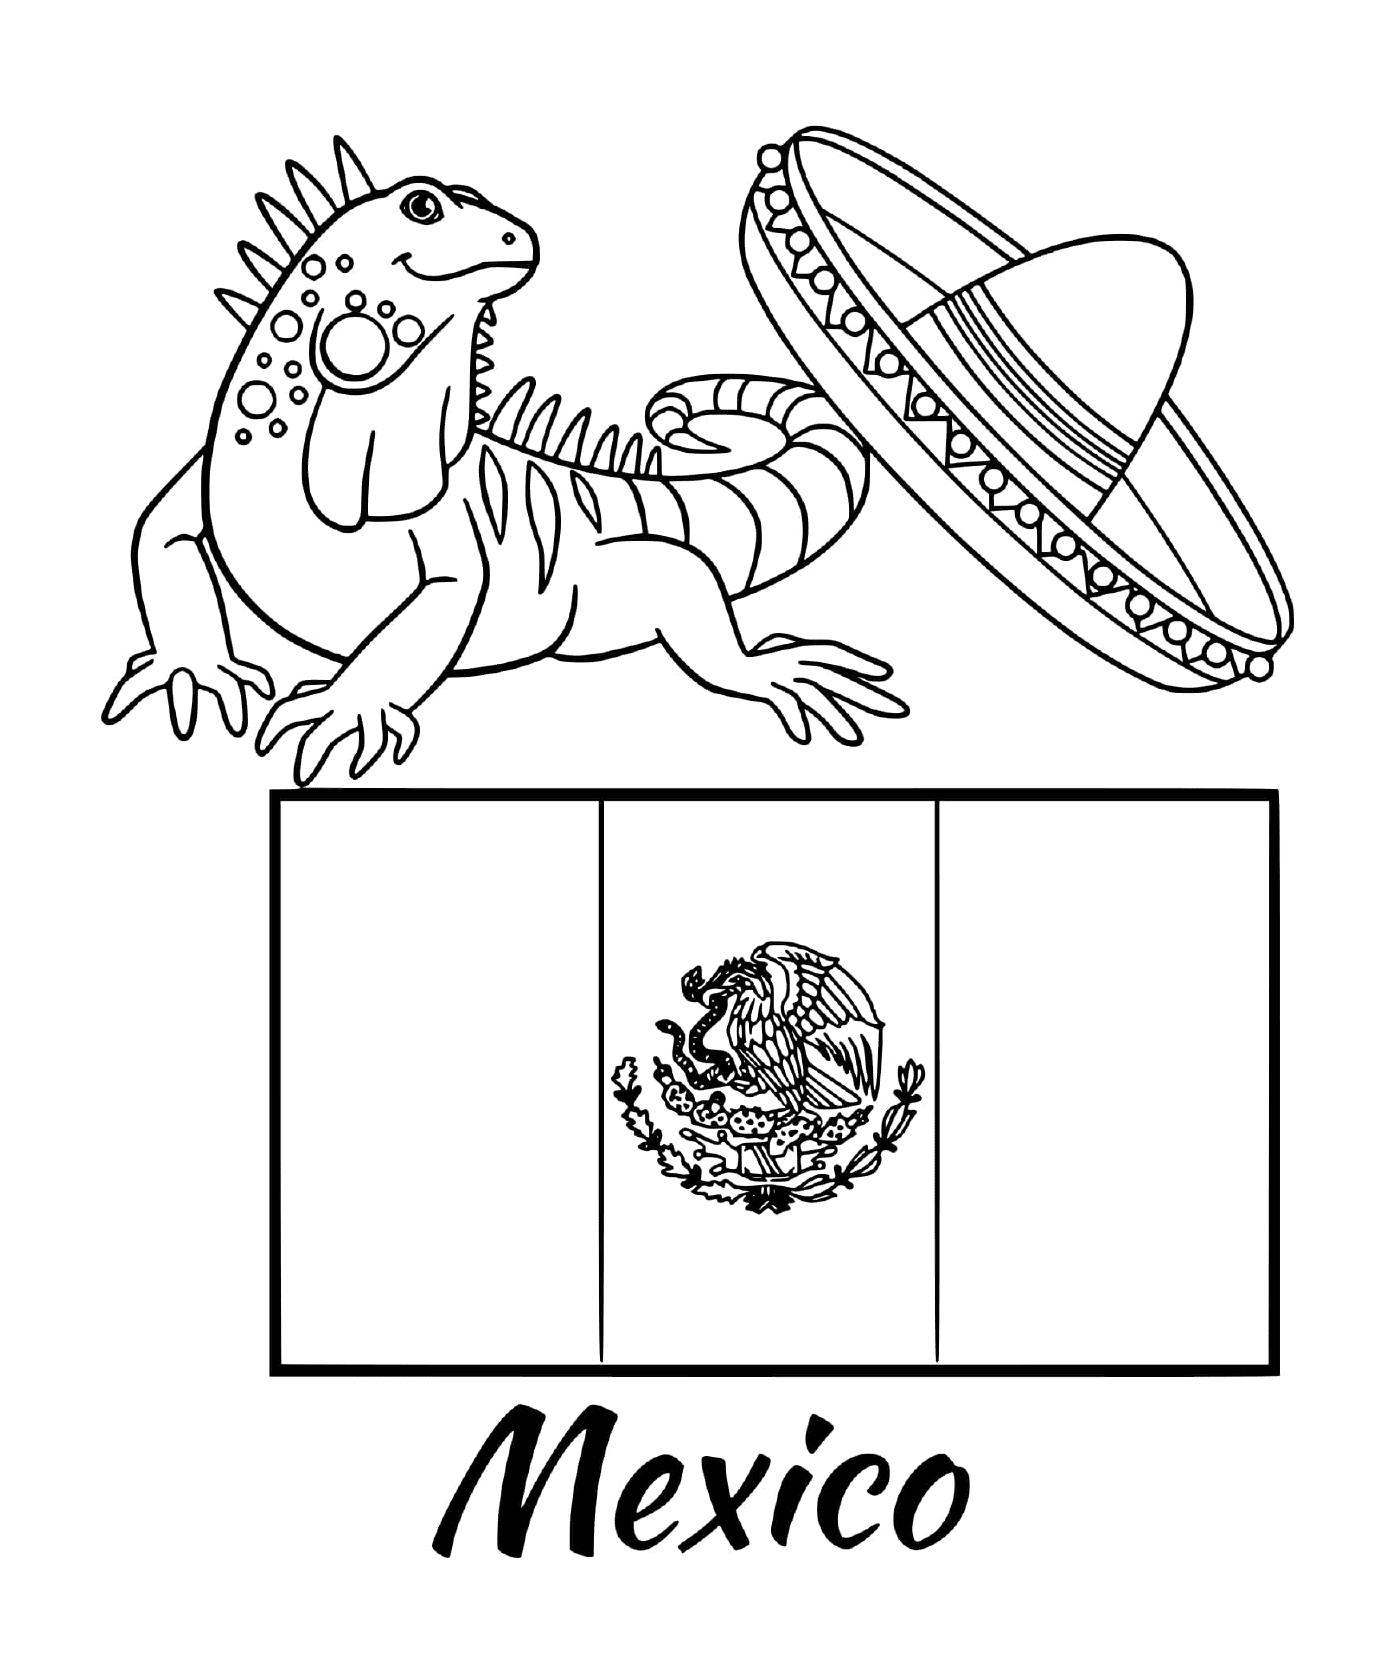   Drapeau du Mexique avec une iguane 